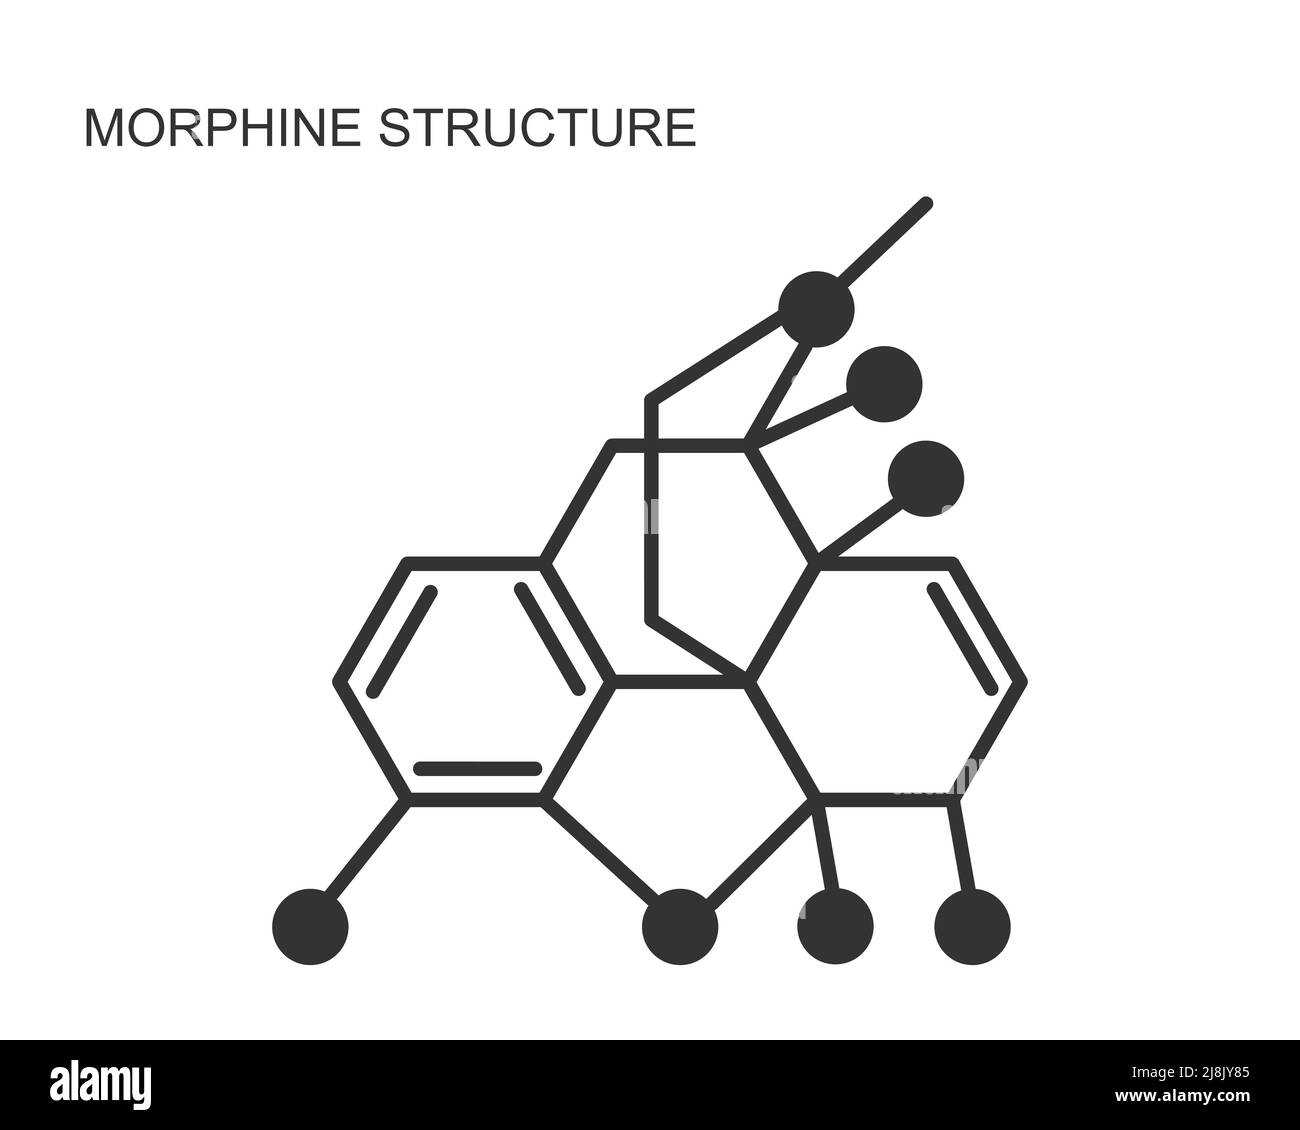 Symbol für die chemische Molekülstruktur von Morphin auf weißem Hintergrund isoliert. Alkaloid mit schmerzlindernden Wirkungen. Medizinische Opiumarzneimittelformel. Vektordarstellung. Stock Vektor